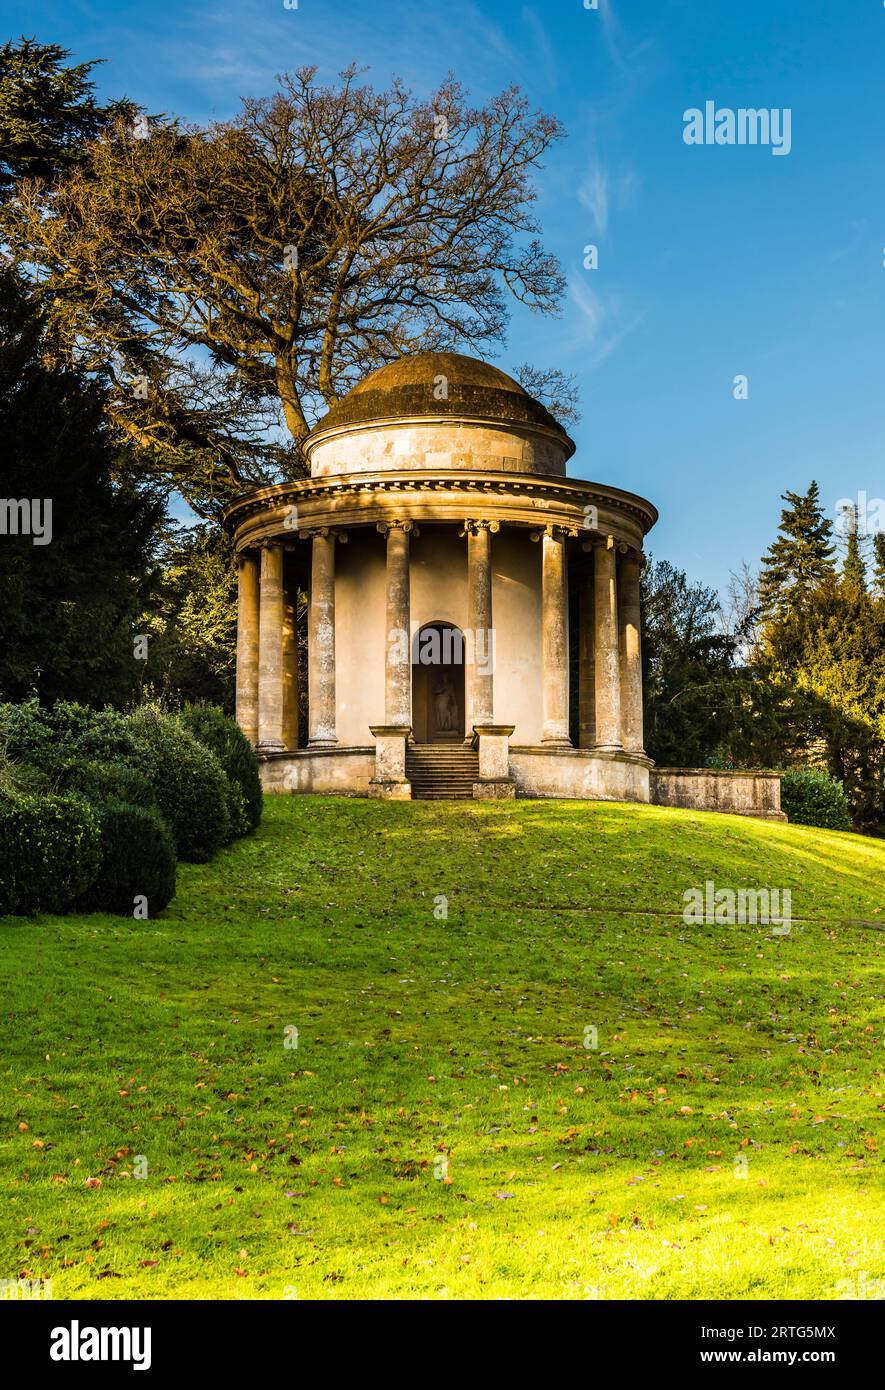 Temple of Ancient Virtue à Stowe, Buckinghamshire, Royaume-Uni Banque D'Images